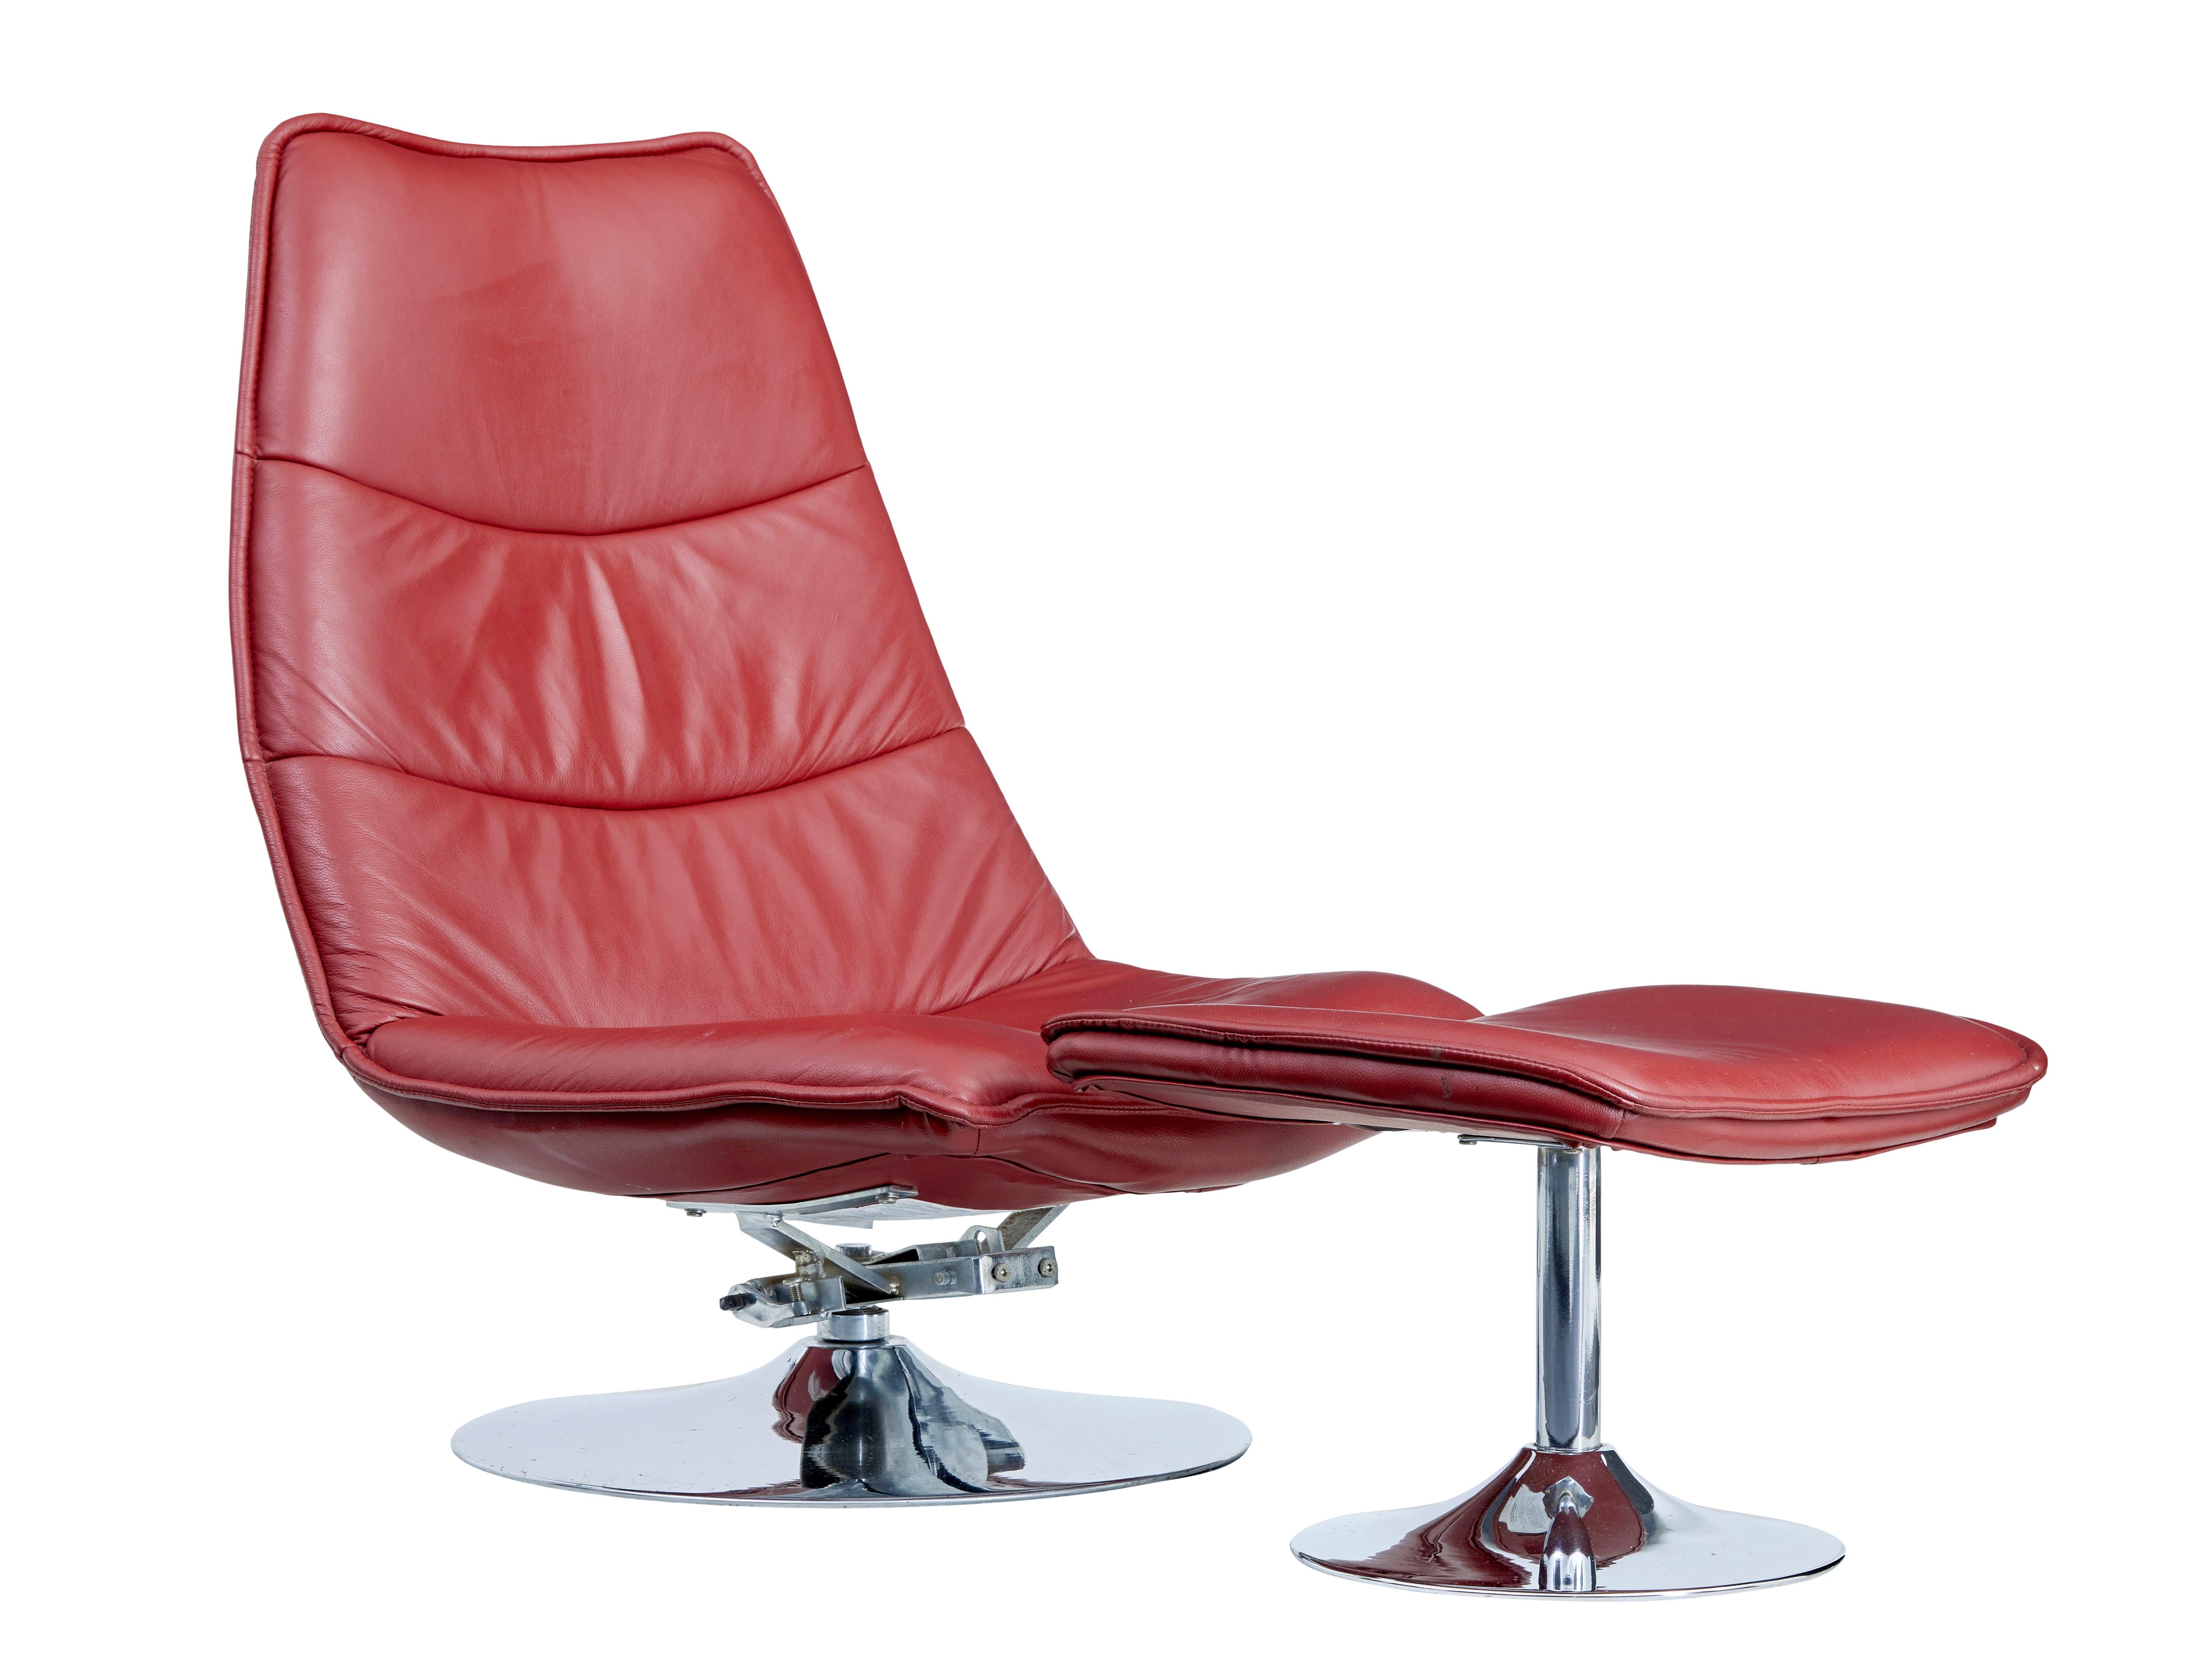 Chrom- und Lederstuhl mit Hocker aus dem 20. Jahrhundert, um 1980.

Hochwertiger Loungesessel mit passendem Hocker zum Hochlegen der Füße, sehr bequemer tiefer und breiter Sitz.

Der Sessel ist mit einem Liegemechanismus ausgestattet, der an sich